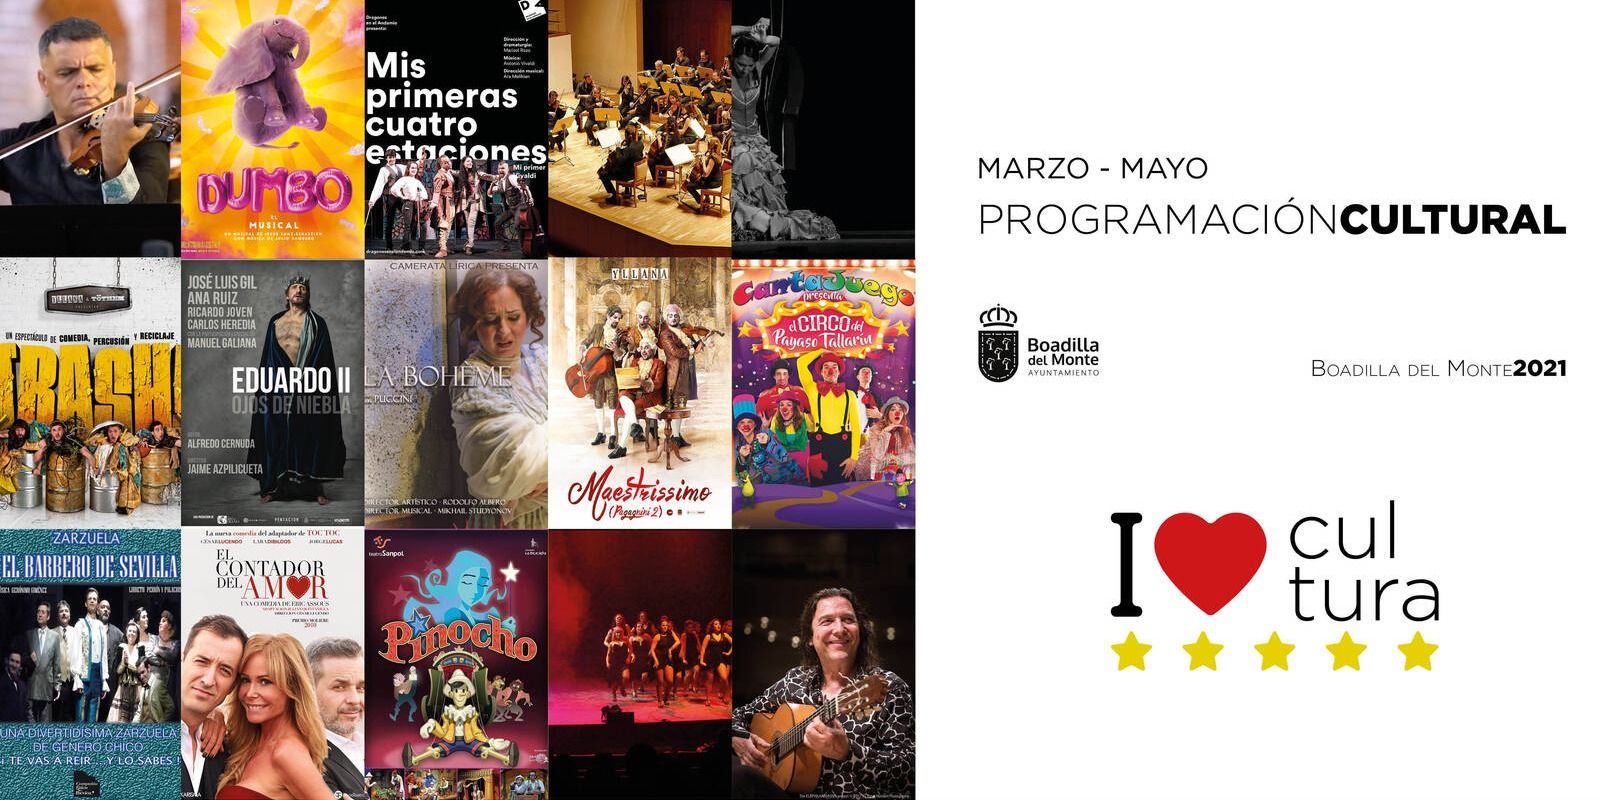 Boadilla del Monte presenta su programación cultural hasta mayo